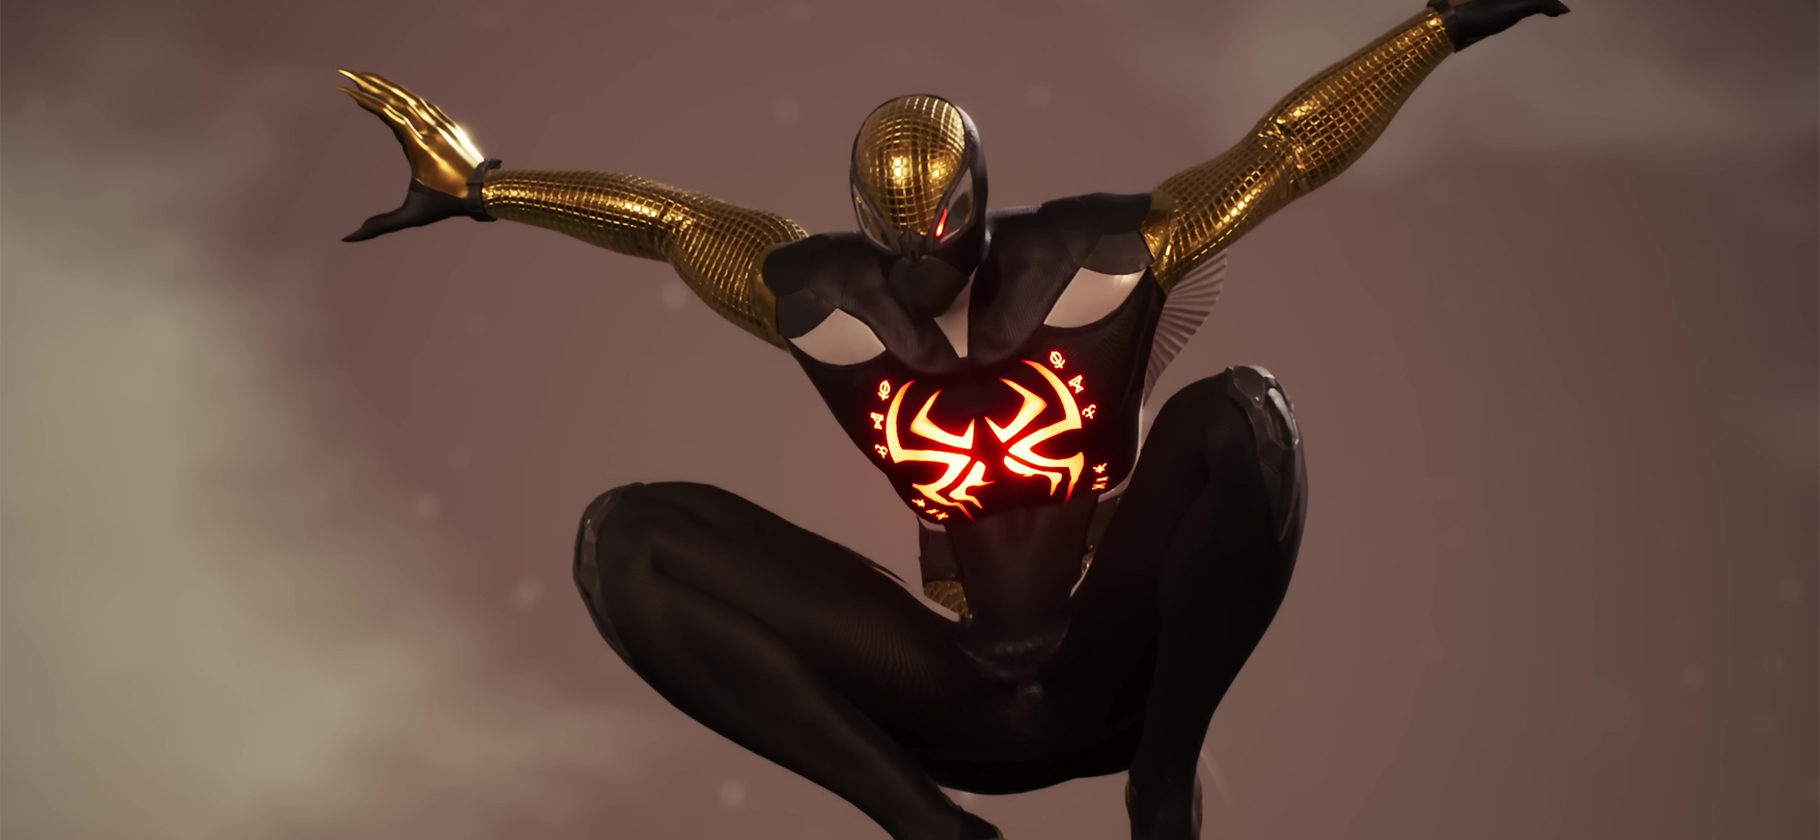 Midnight Suns — игра, где можно подружиться с Блэйдом и Человеком-пауком, а заодно и спасти мир